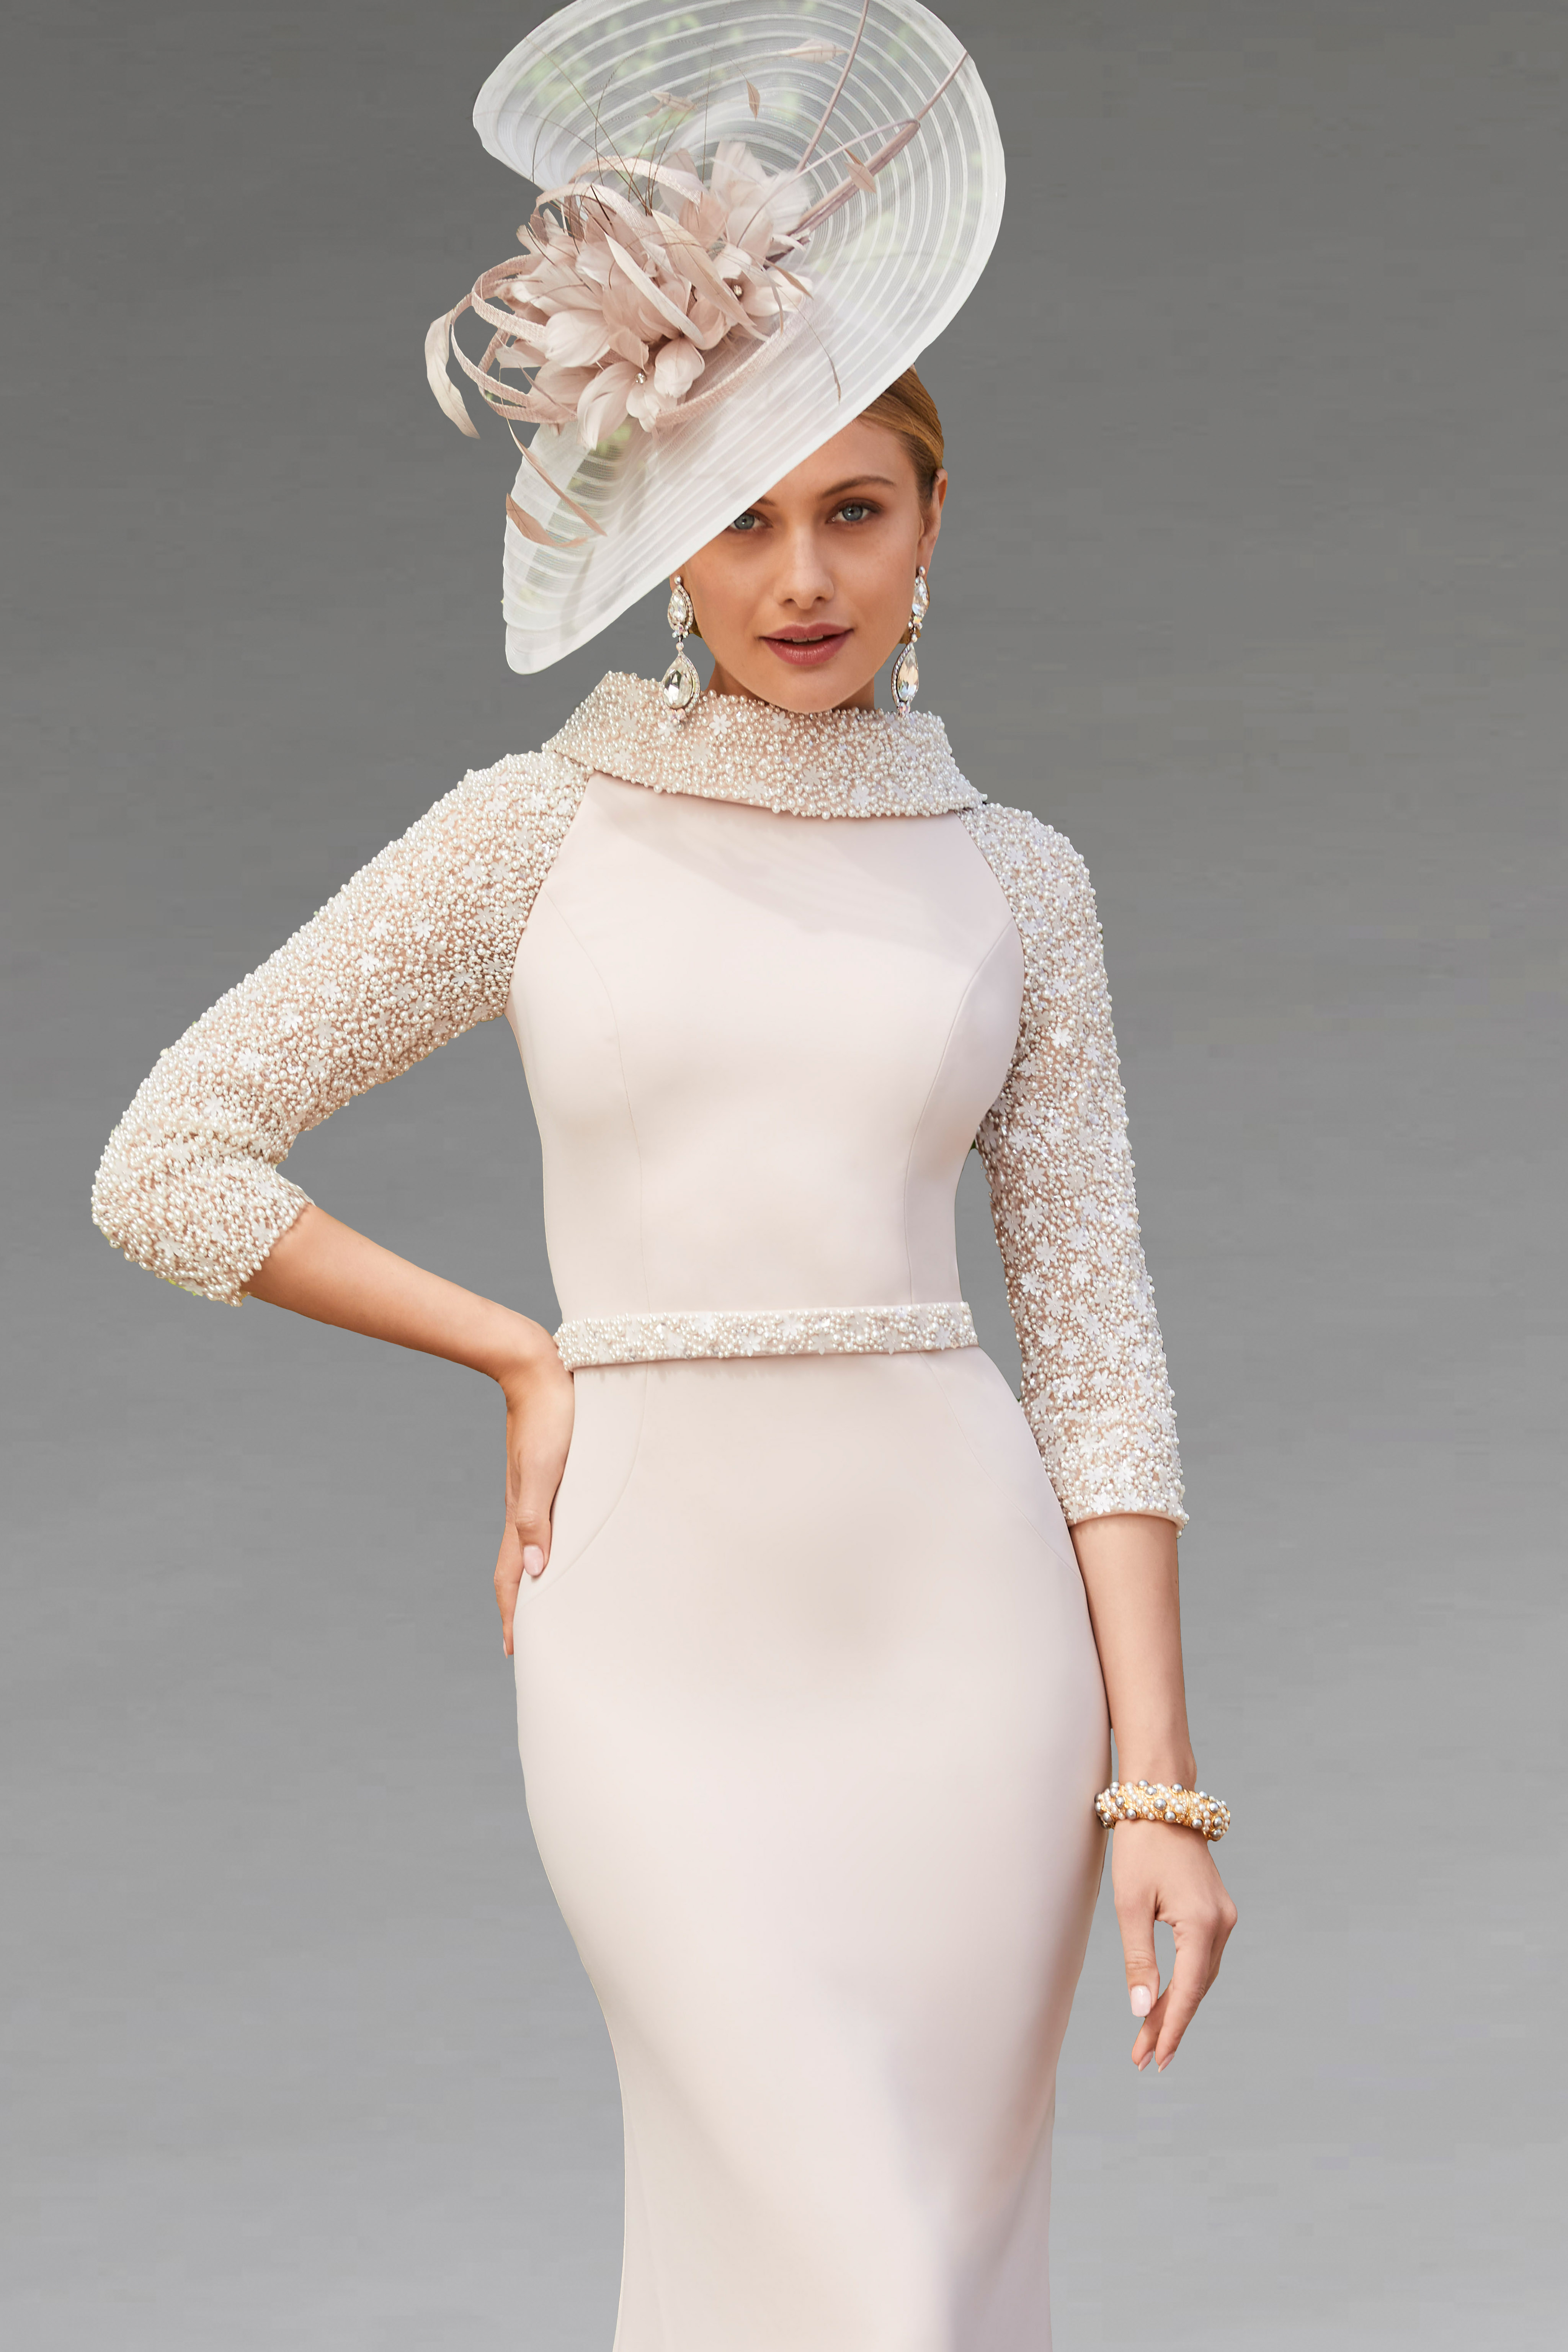 Buy J Kara Women's 3/4 Sleeve Beaded Gown, Teal/Multi, 8 at Amazon.in